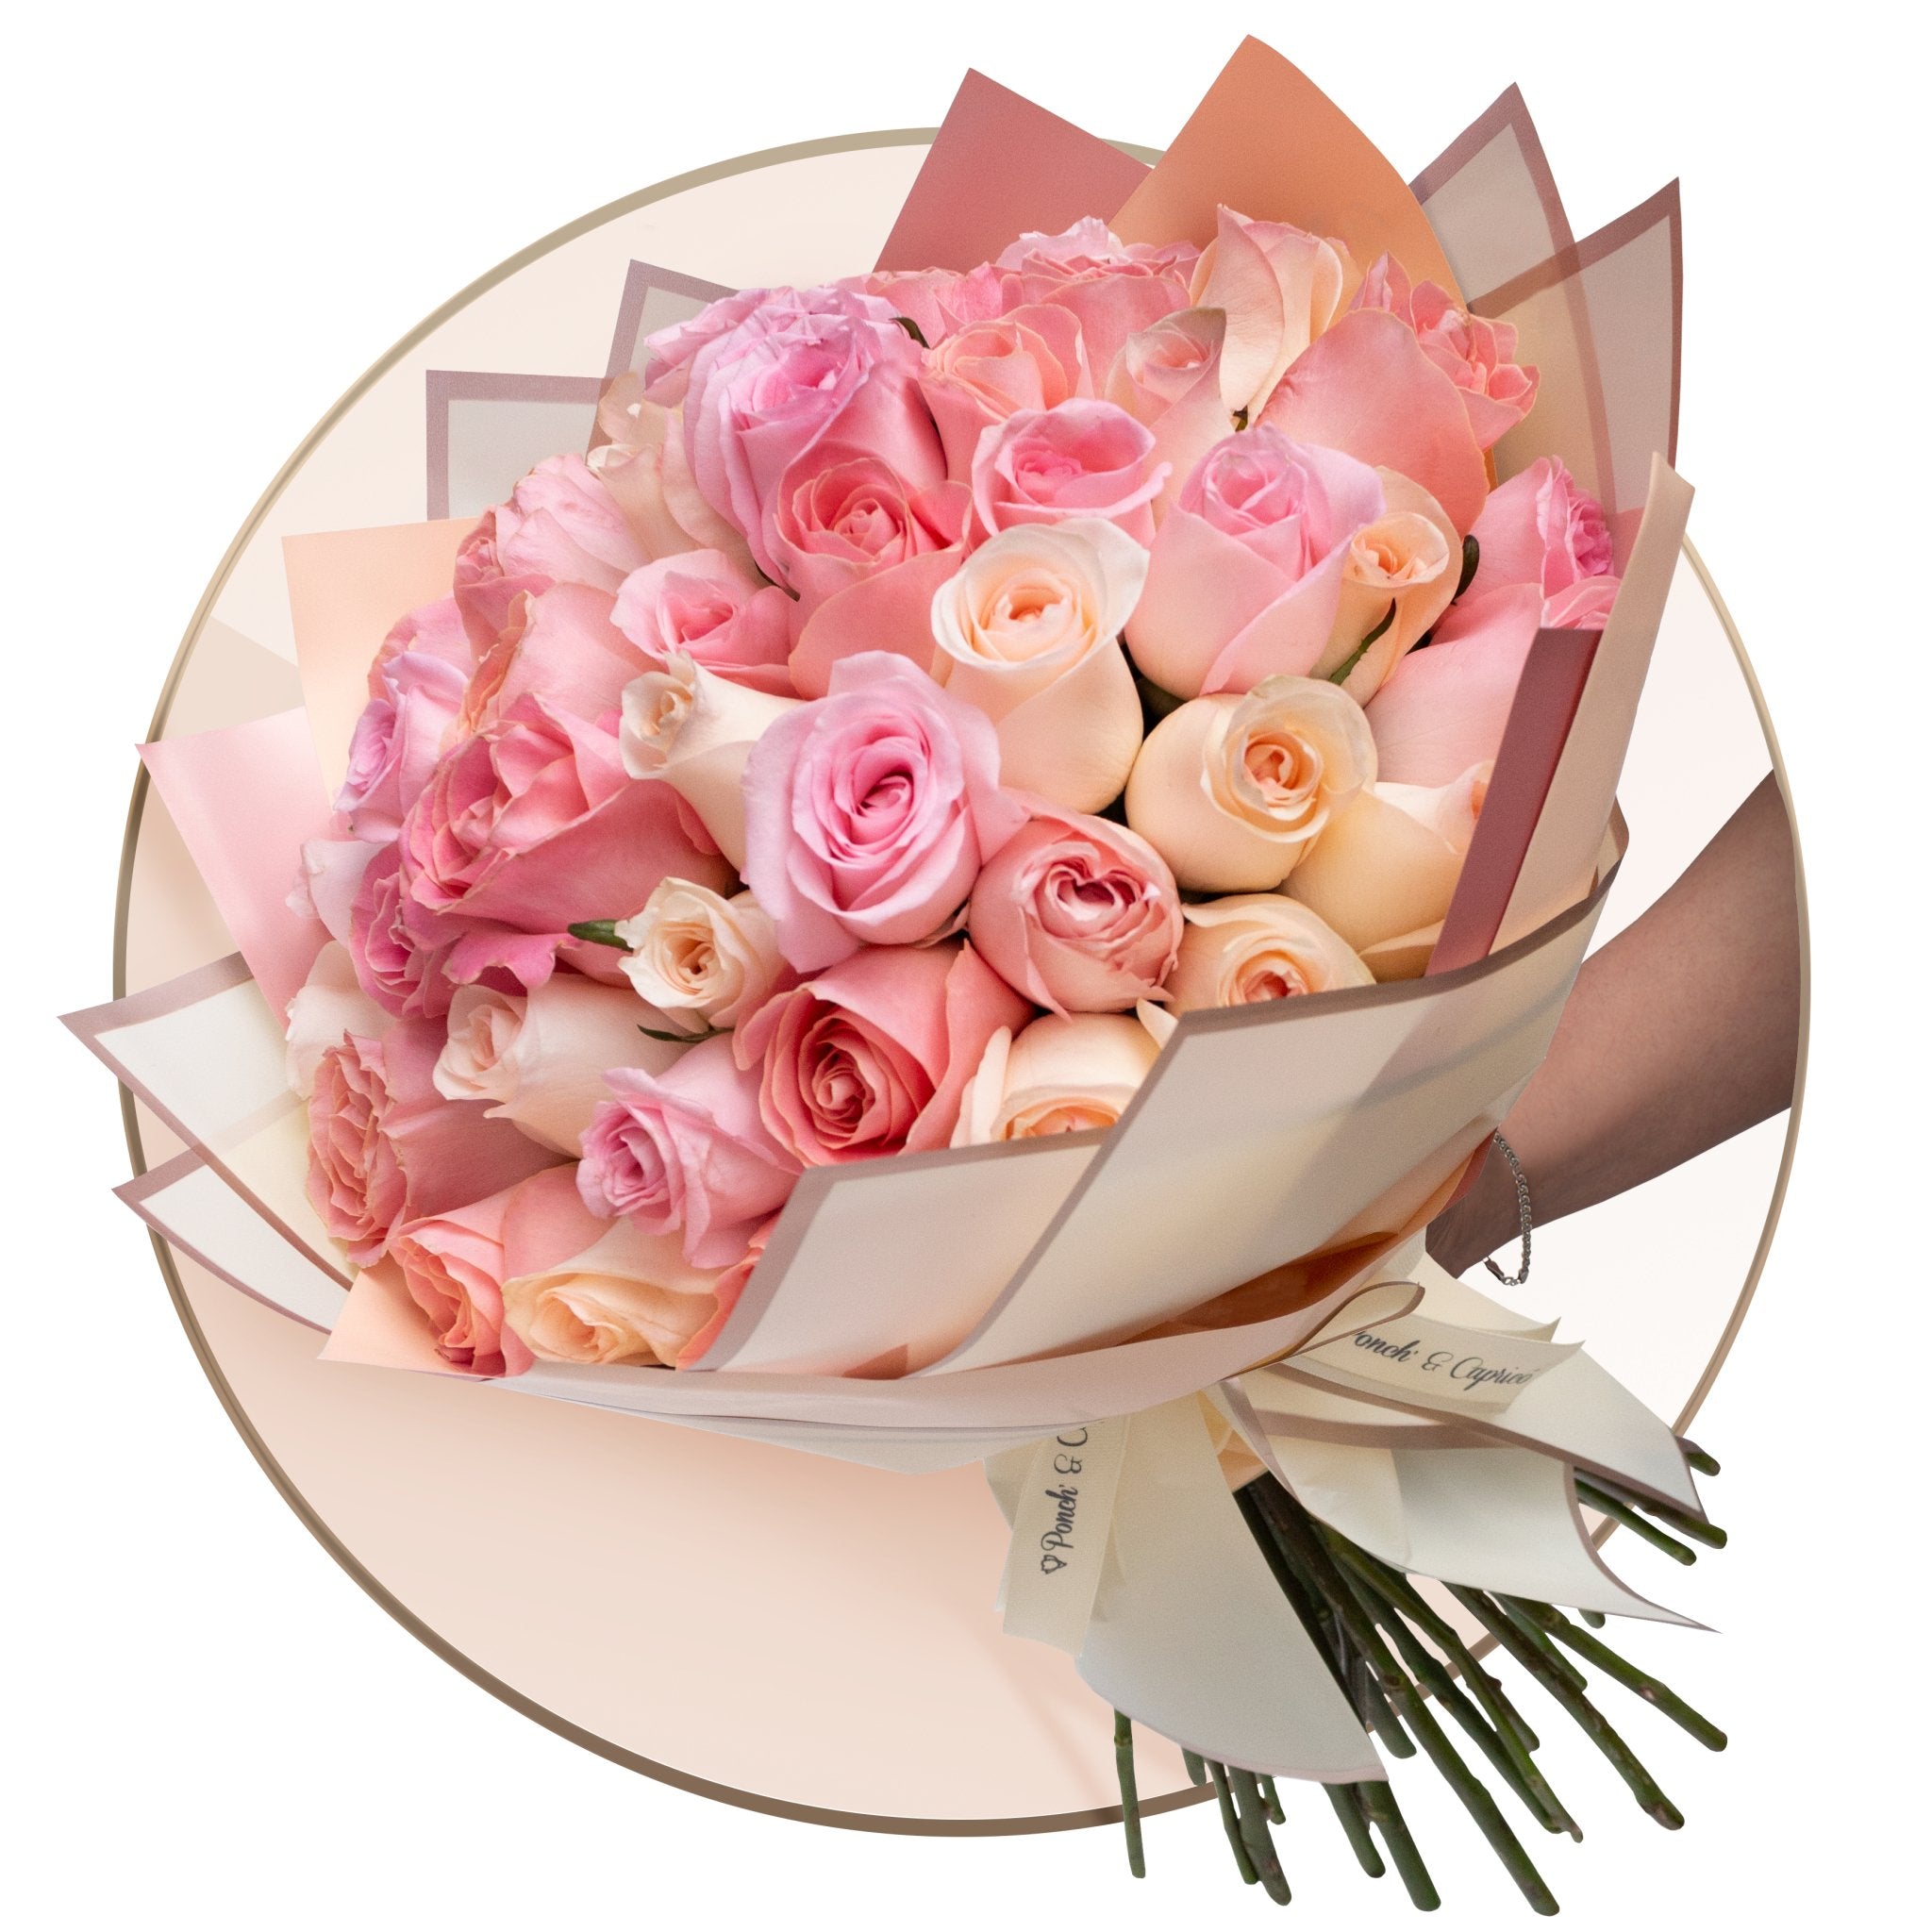 50 Rosas Hermosa, Caricia y Señorita en Ramillete + Bunch de Globos con Helio Personalizado -SET050-